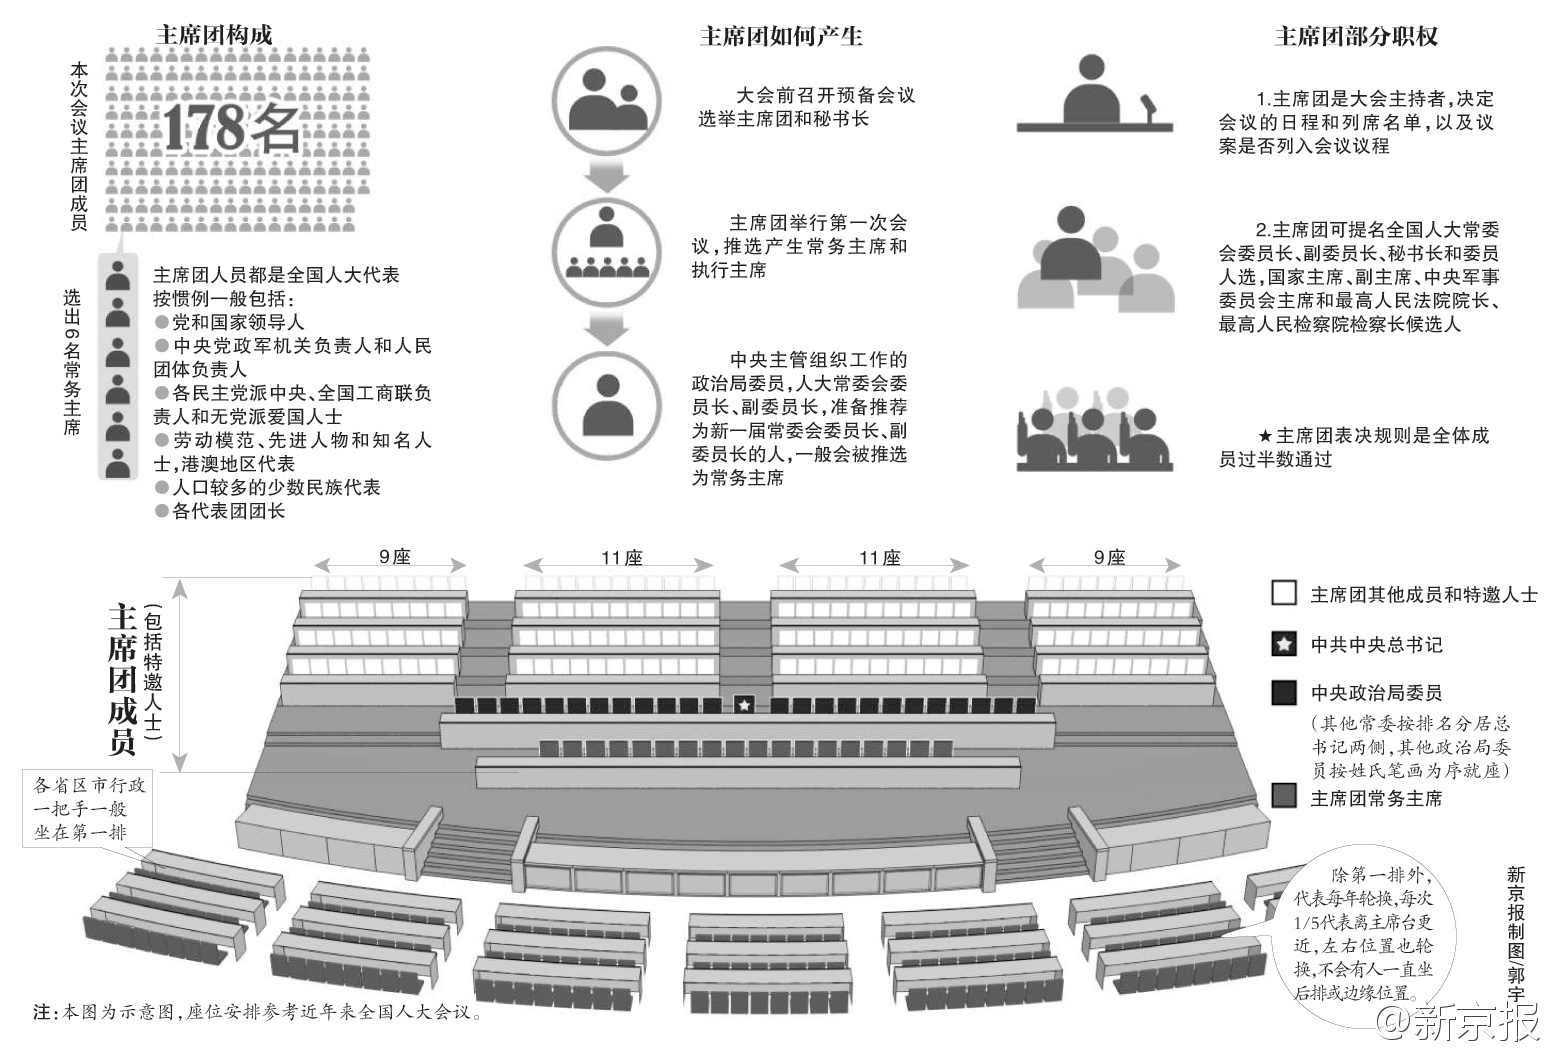 人大全体会议座位:政治局委员就座主席台第二排